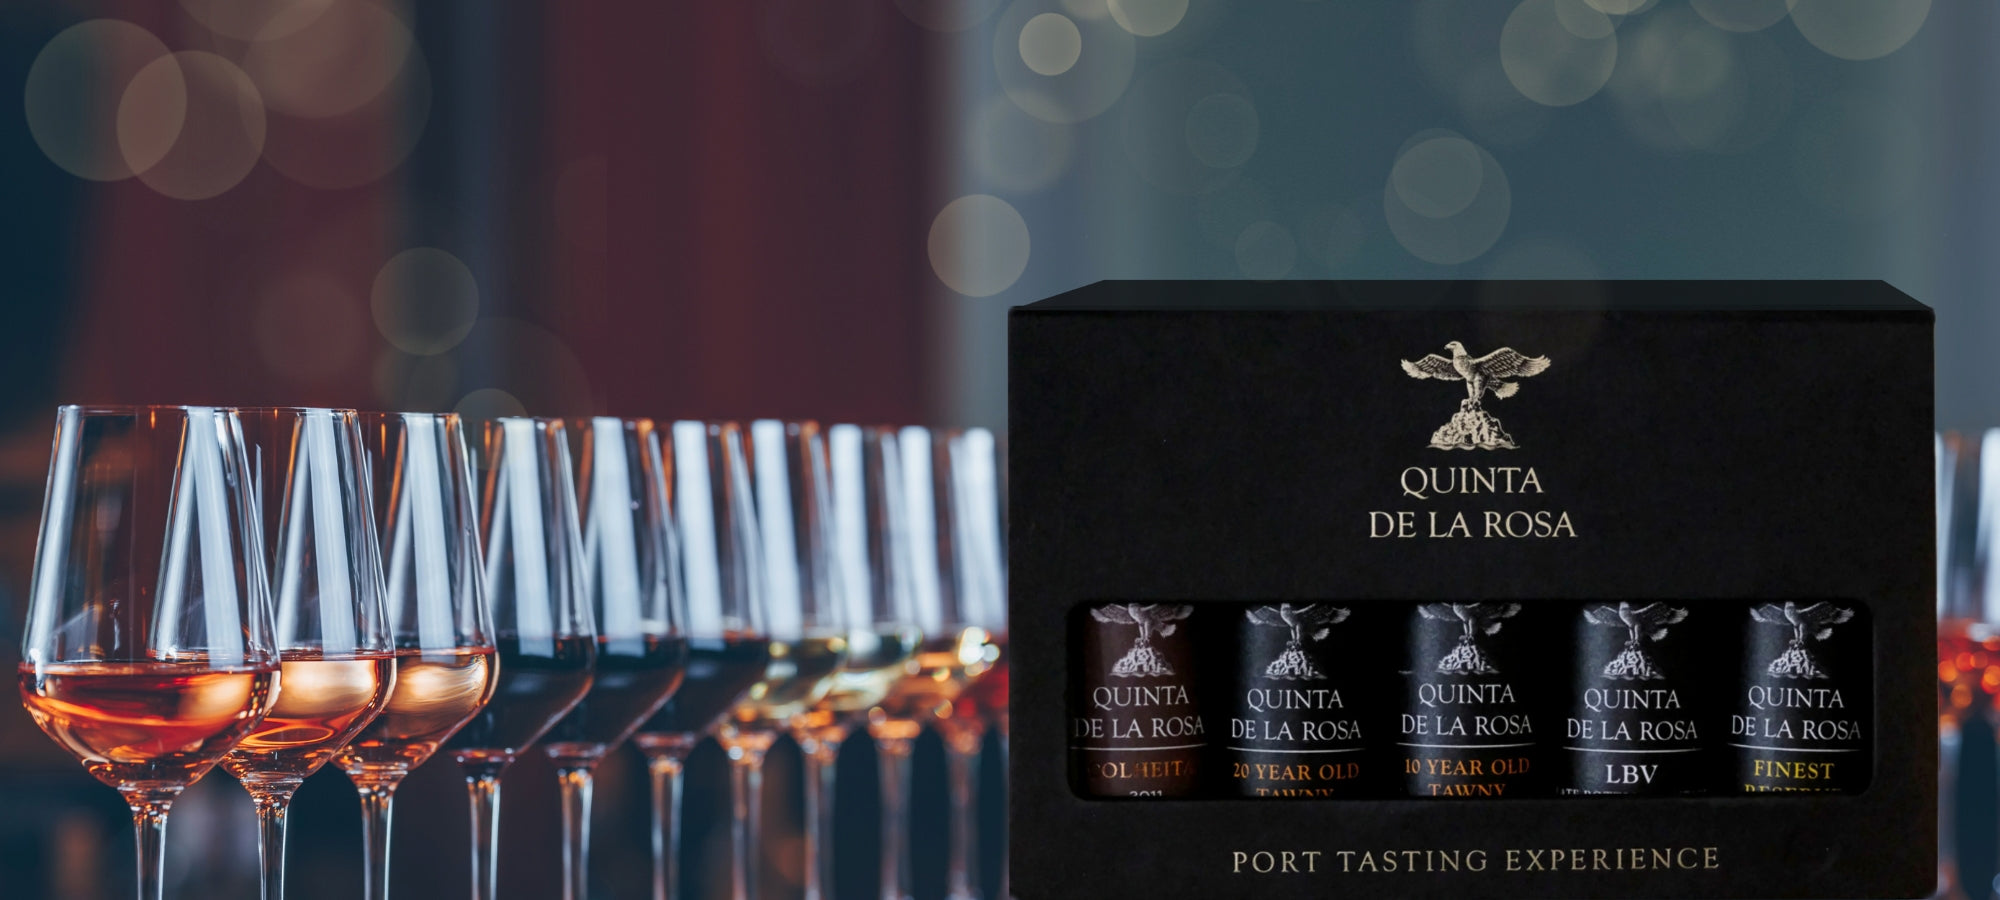 Portwein Tasting-Set in edler schwarzer Verpackung vom Weingut Quinta de la Rosa, daneben verschiedene Portweingläser.